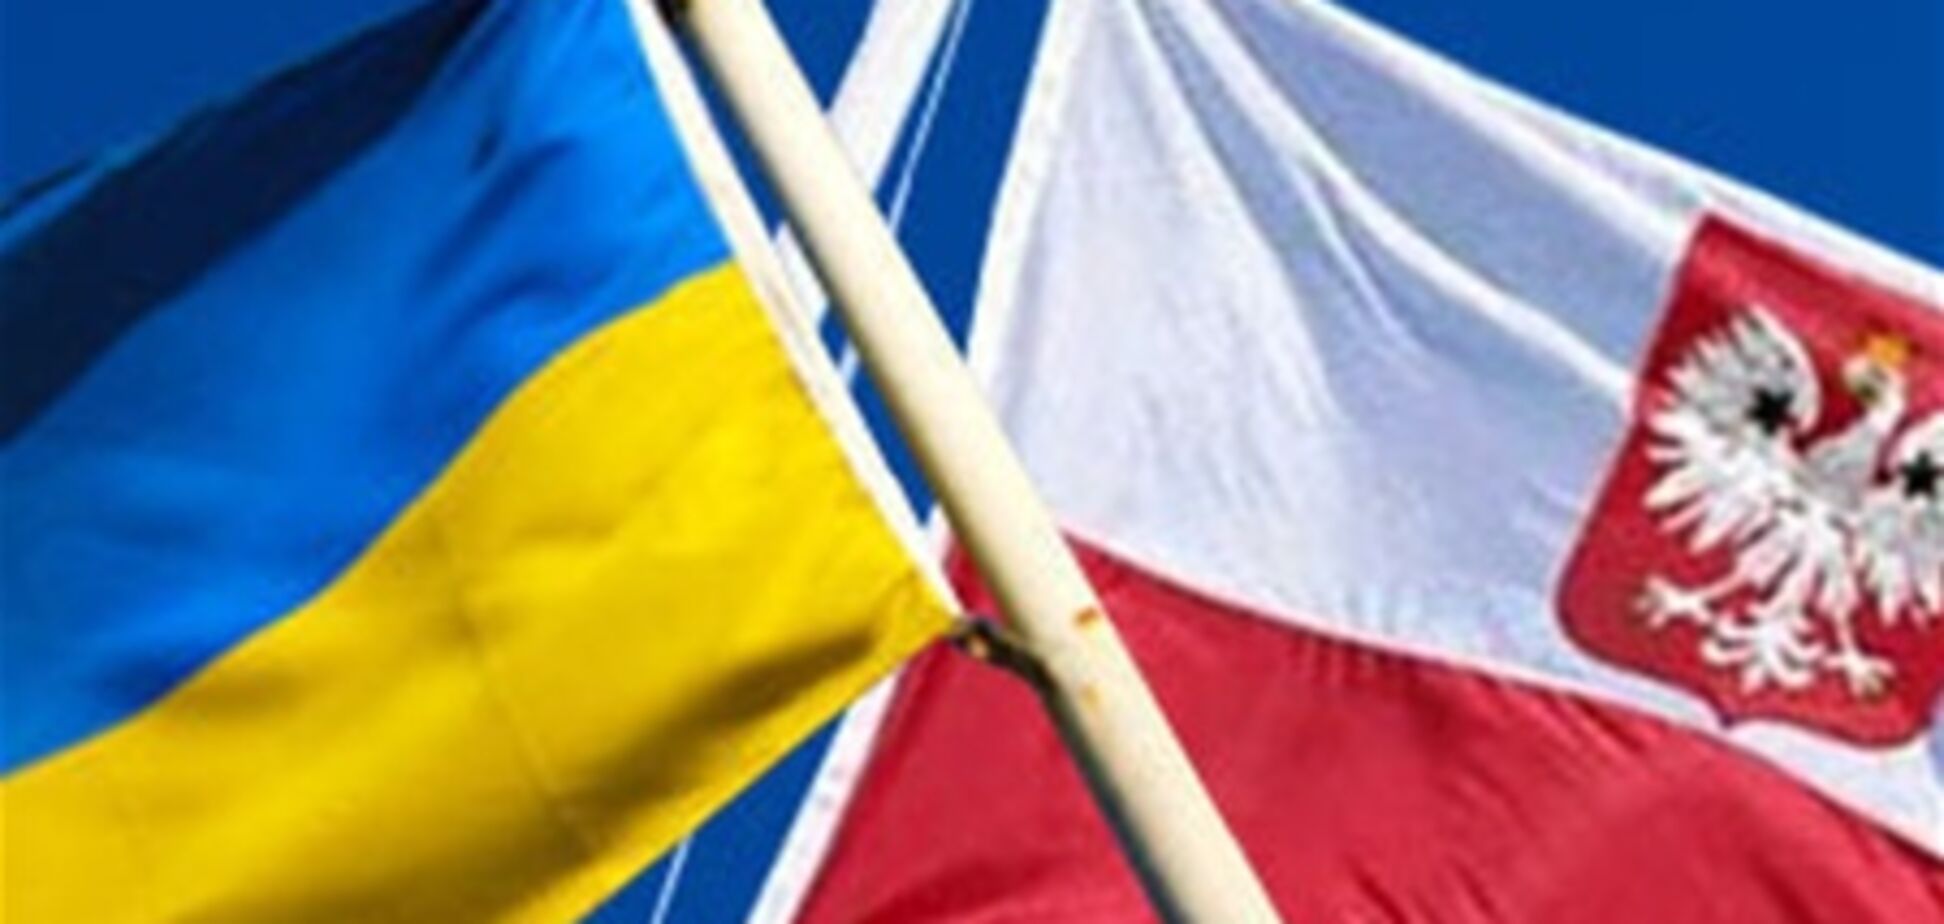 Польские визы для украинцев станут бесплатными